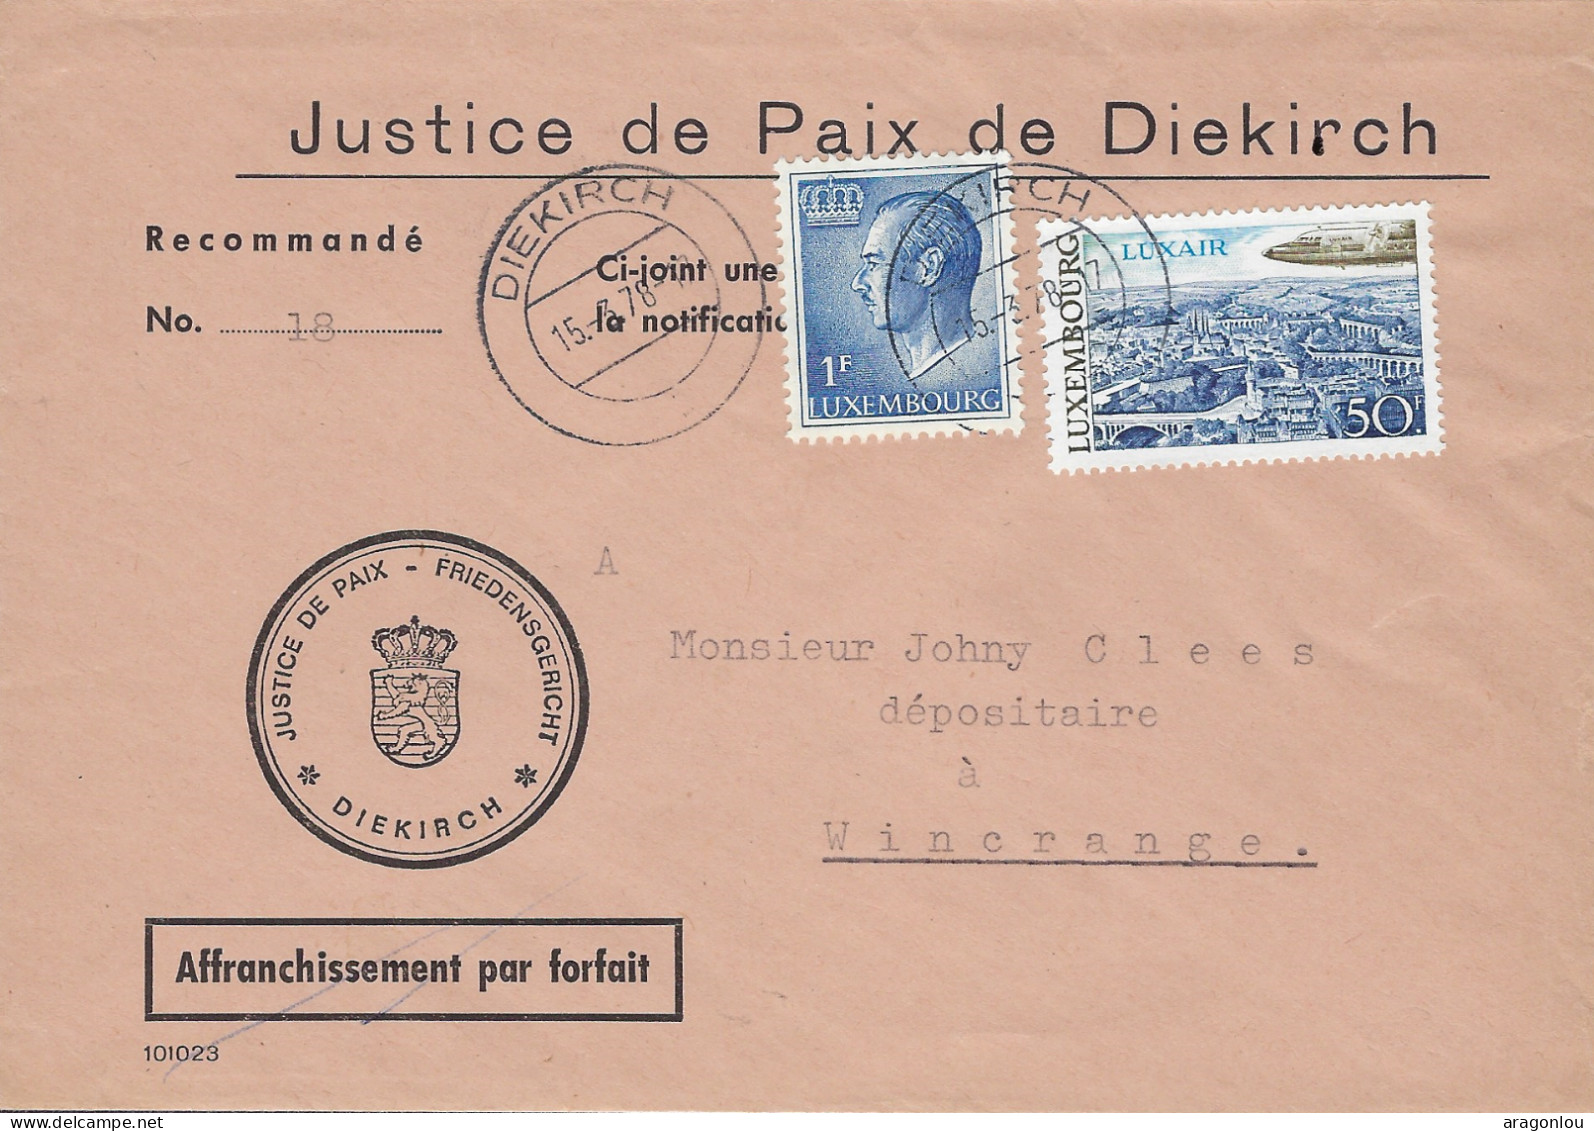 Luxembourg - Luxemburg - Lettre      1978  -  JUSTICE DE PAIX DE DIEKIRCH - Covers & Documents